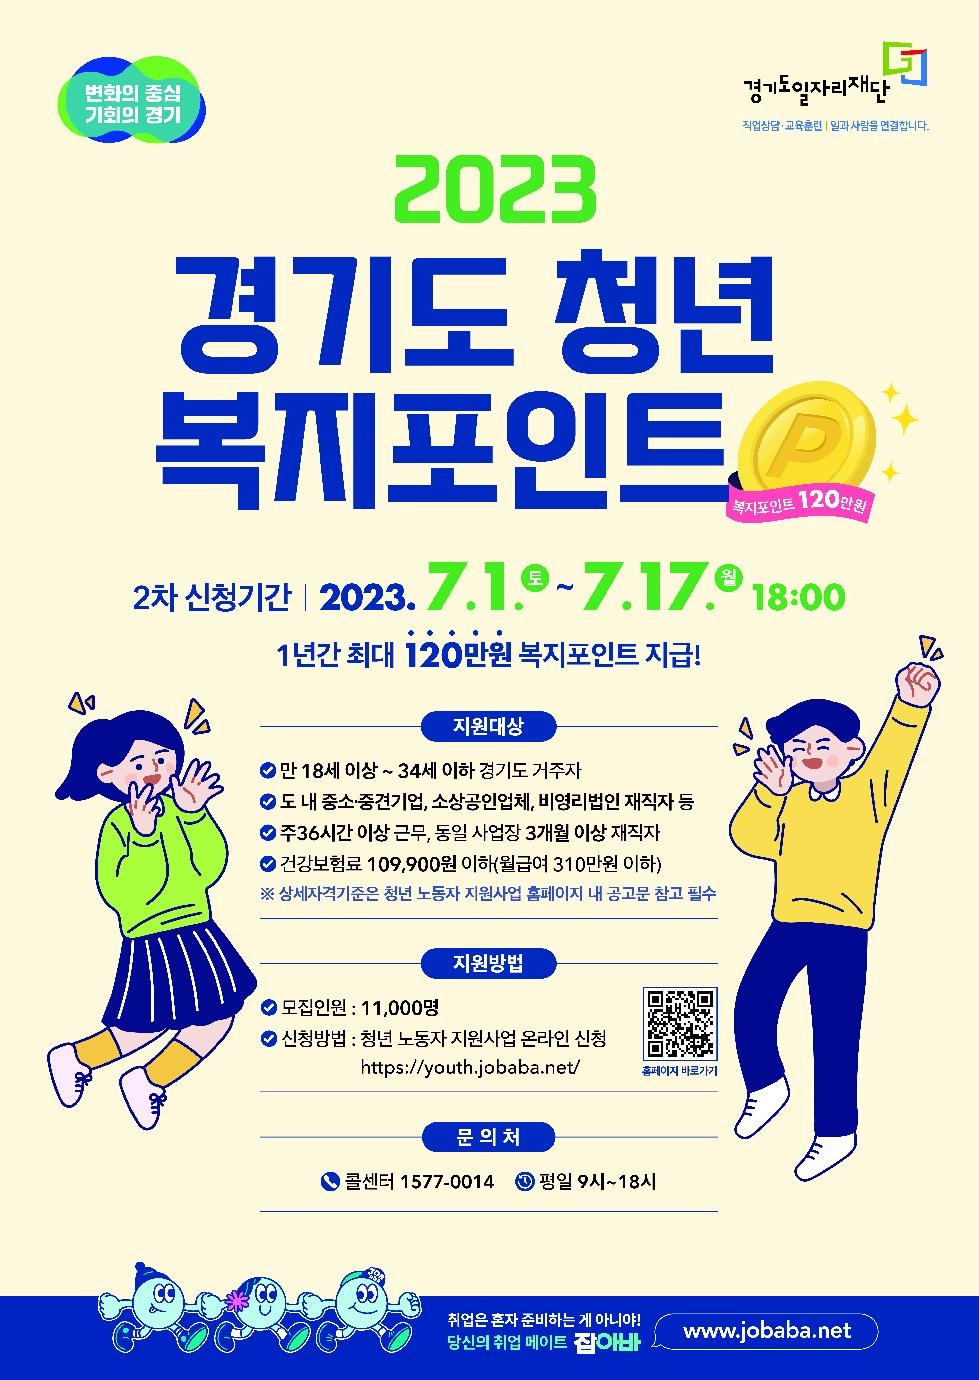 경기도, 연간 120만 원 ‘청년 복지포인트’ 2차 참여자 1만 1천 명